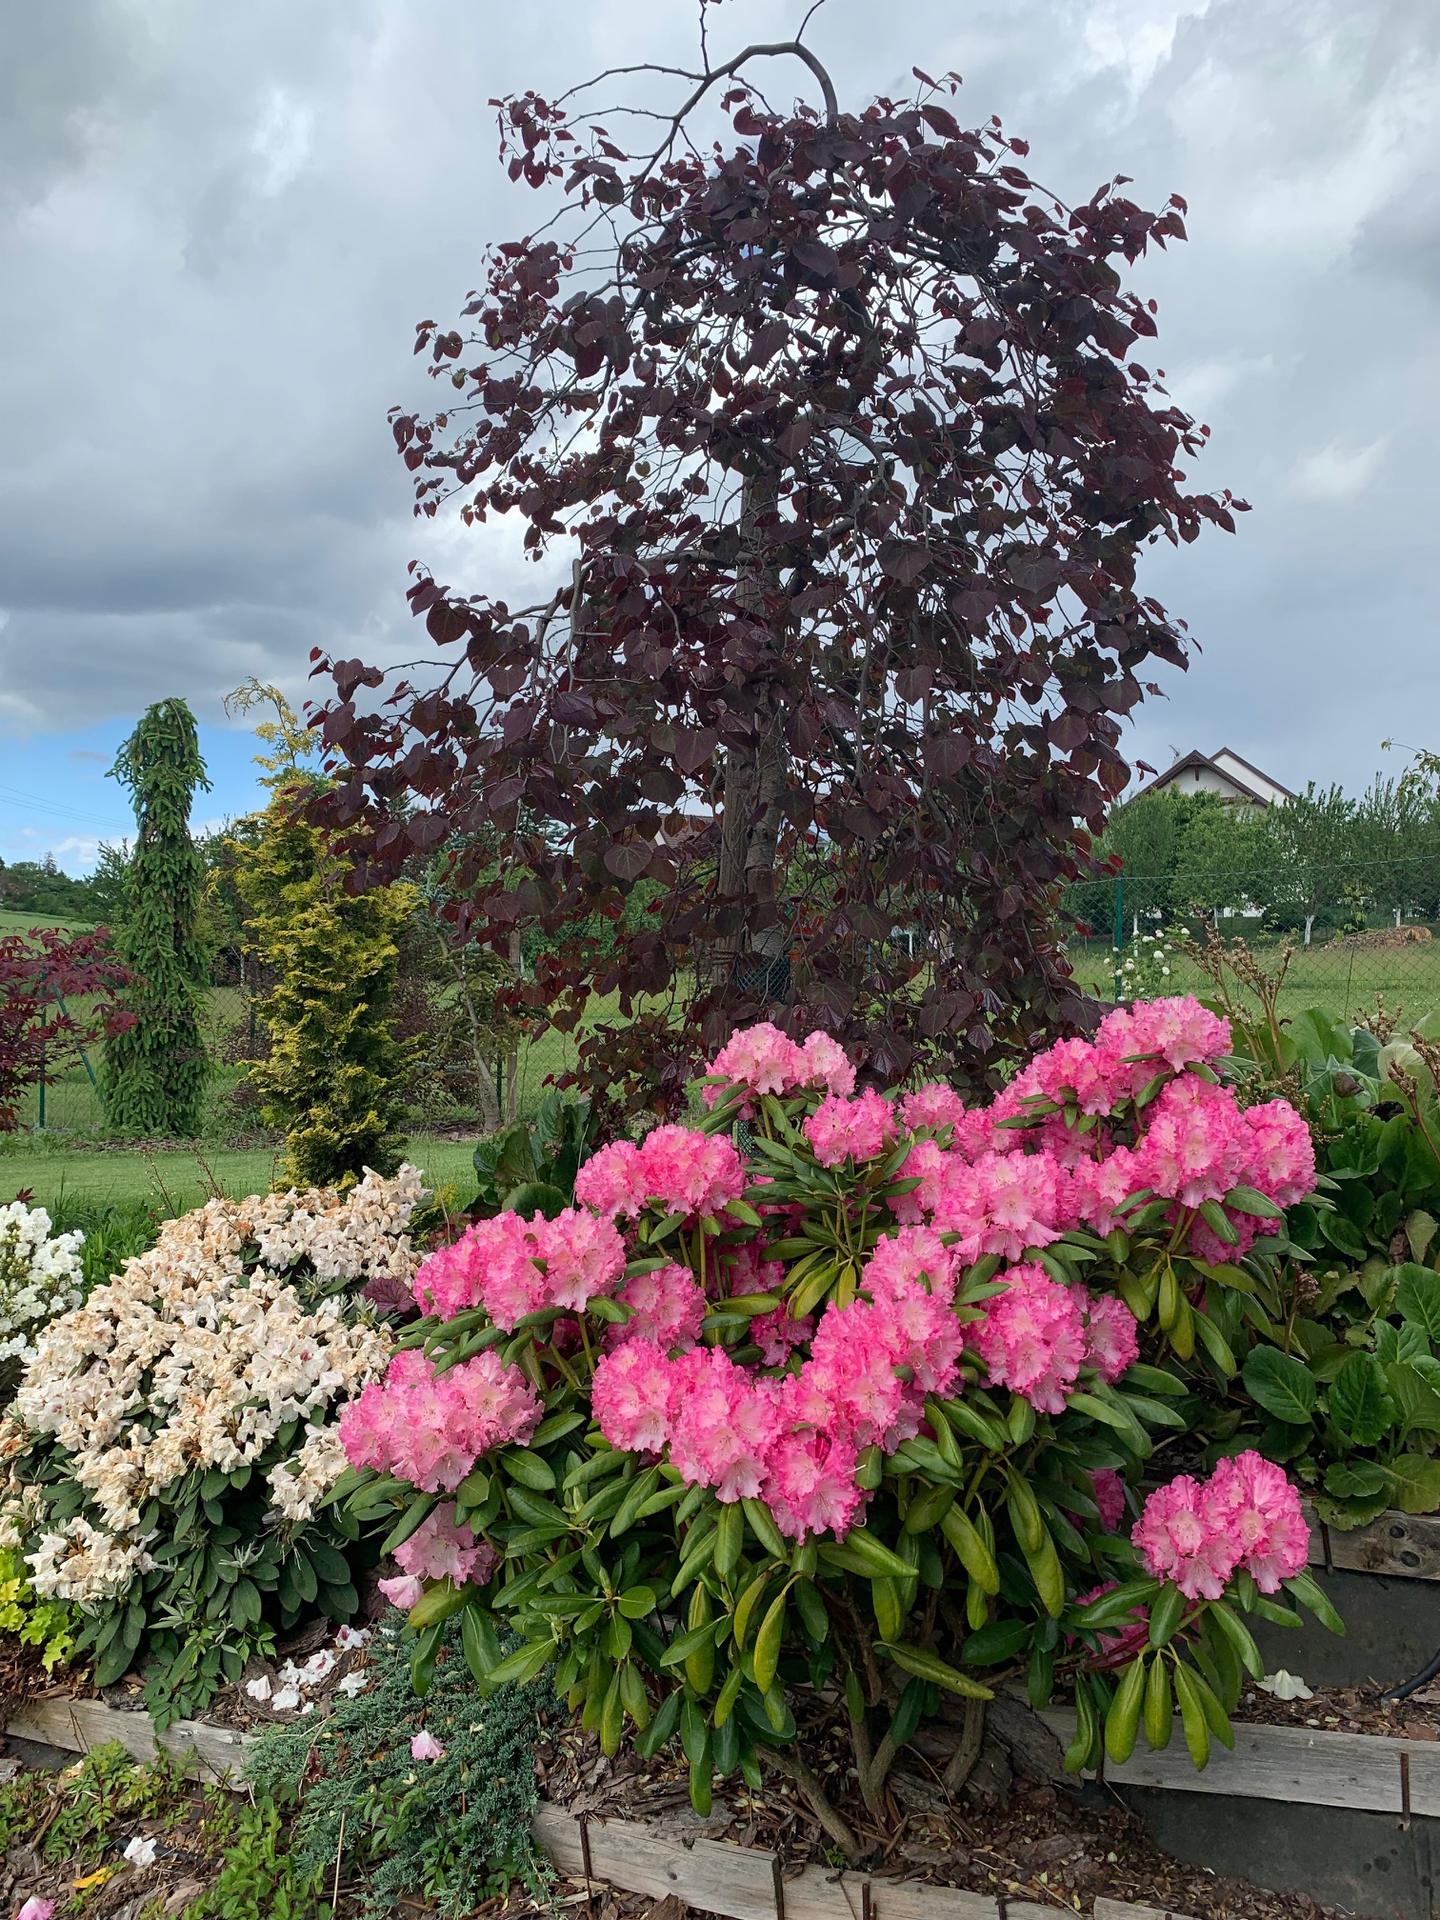 Zahrada květen 2022 - 5 let od výsadby - rododendrony a zmarličník - cercis